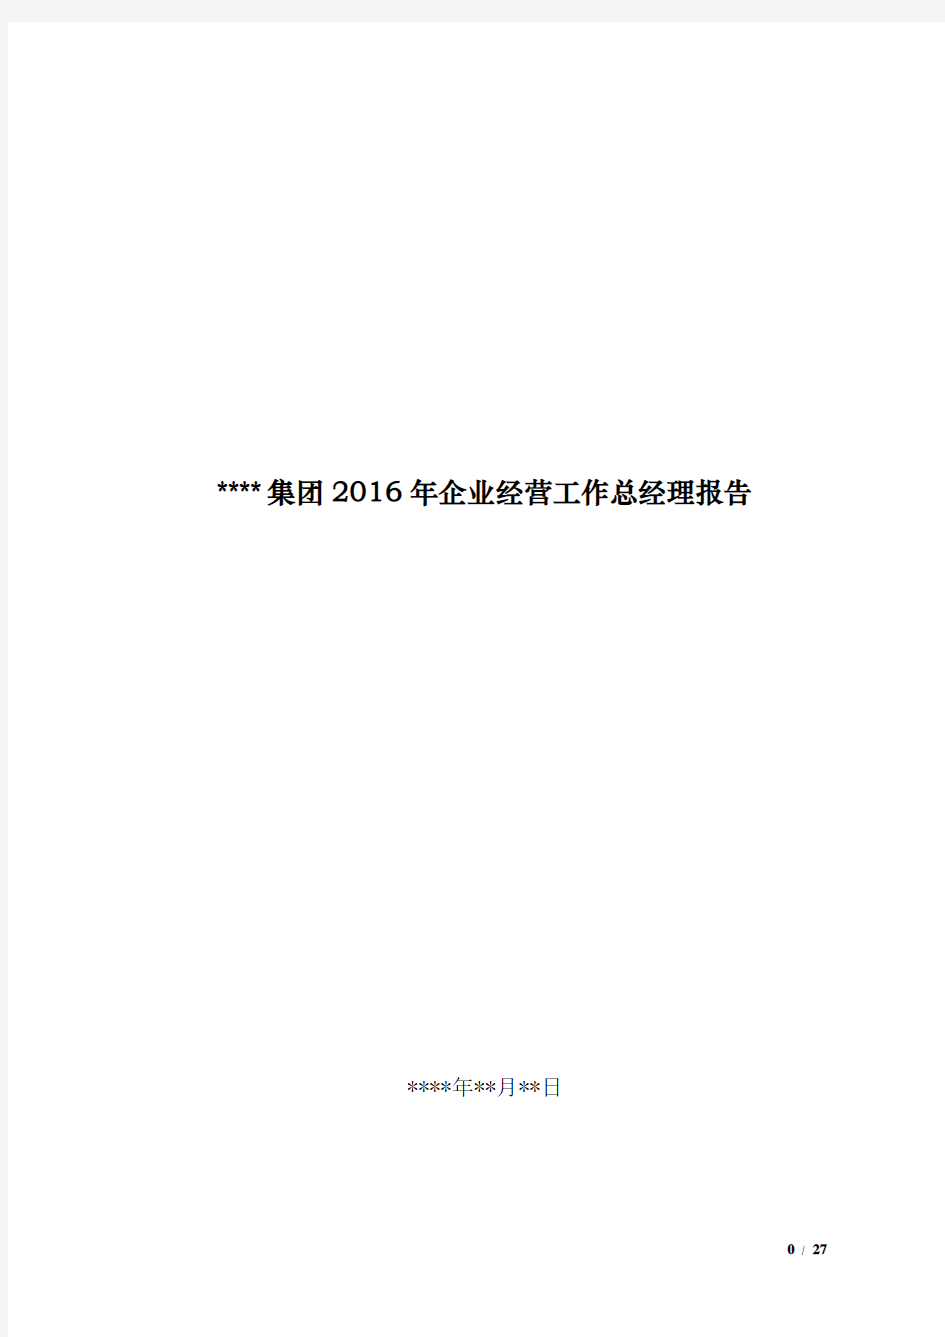 2016年集团总经理工作报告